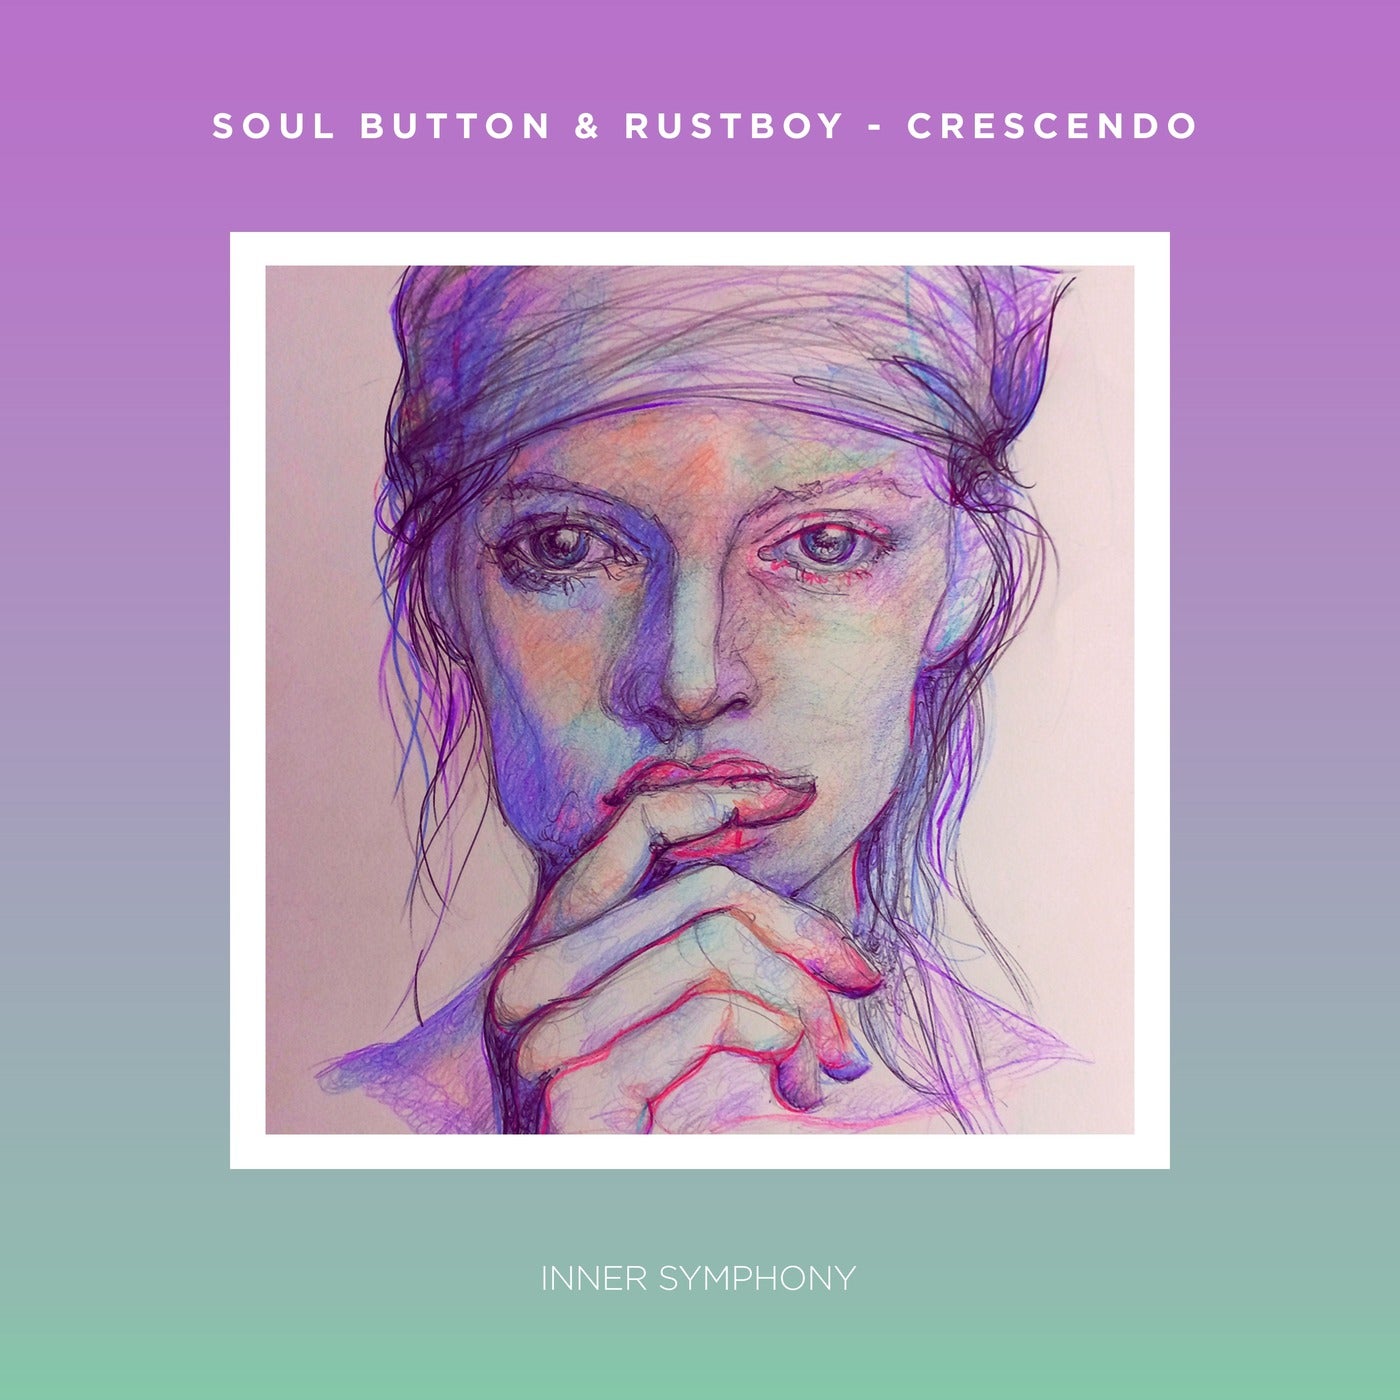 Soul Button, Rustboy - Crescendo (Original Mix)